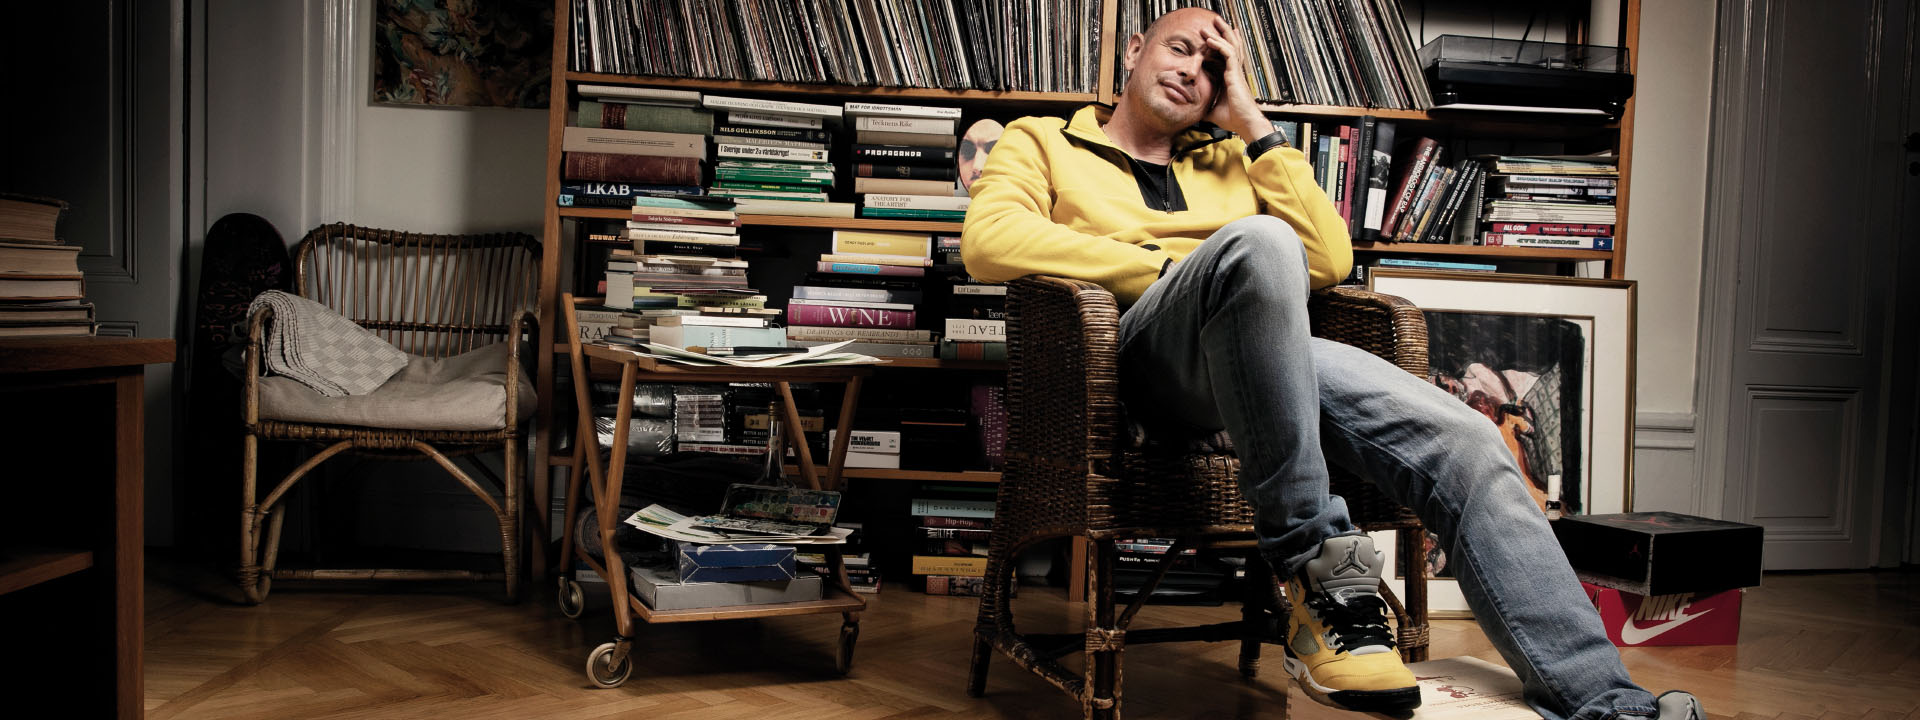 Artisten Petter sitter i en stol framför en bokhylla